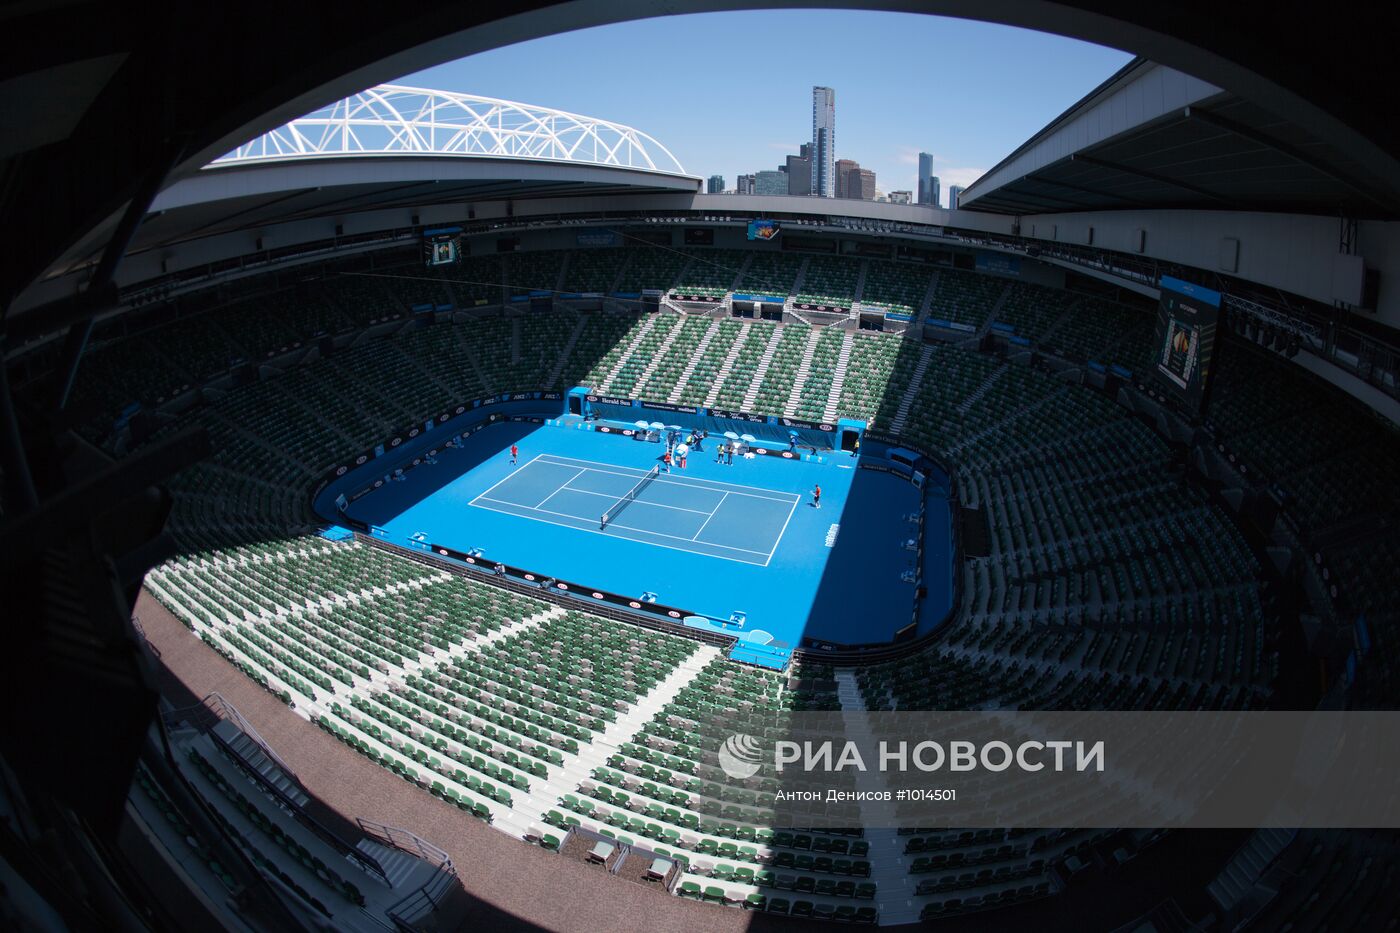 Теннис. Подготовка к проведению Открытого чемпионата Австралии